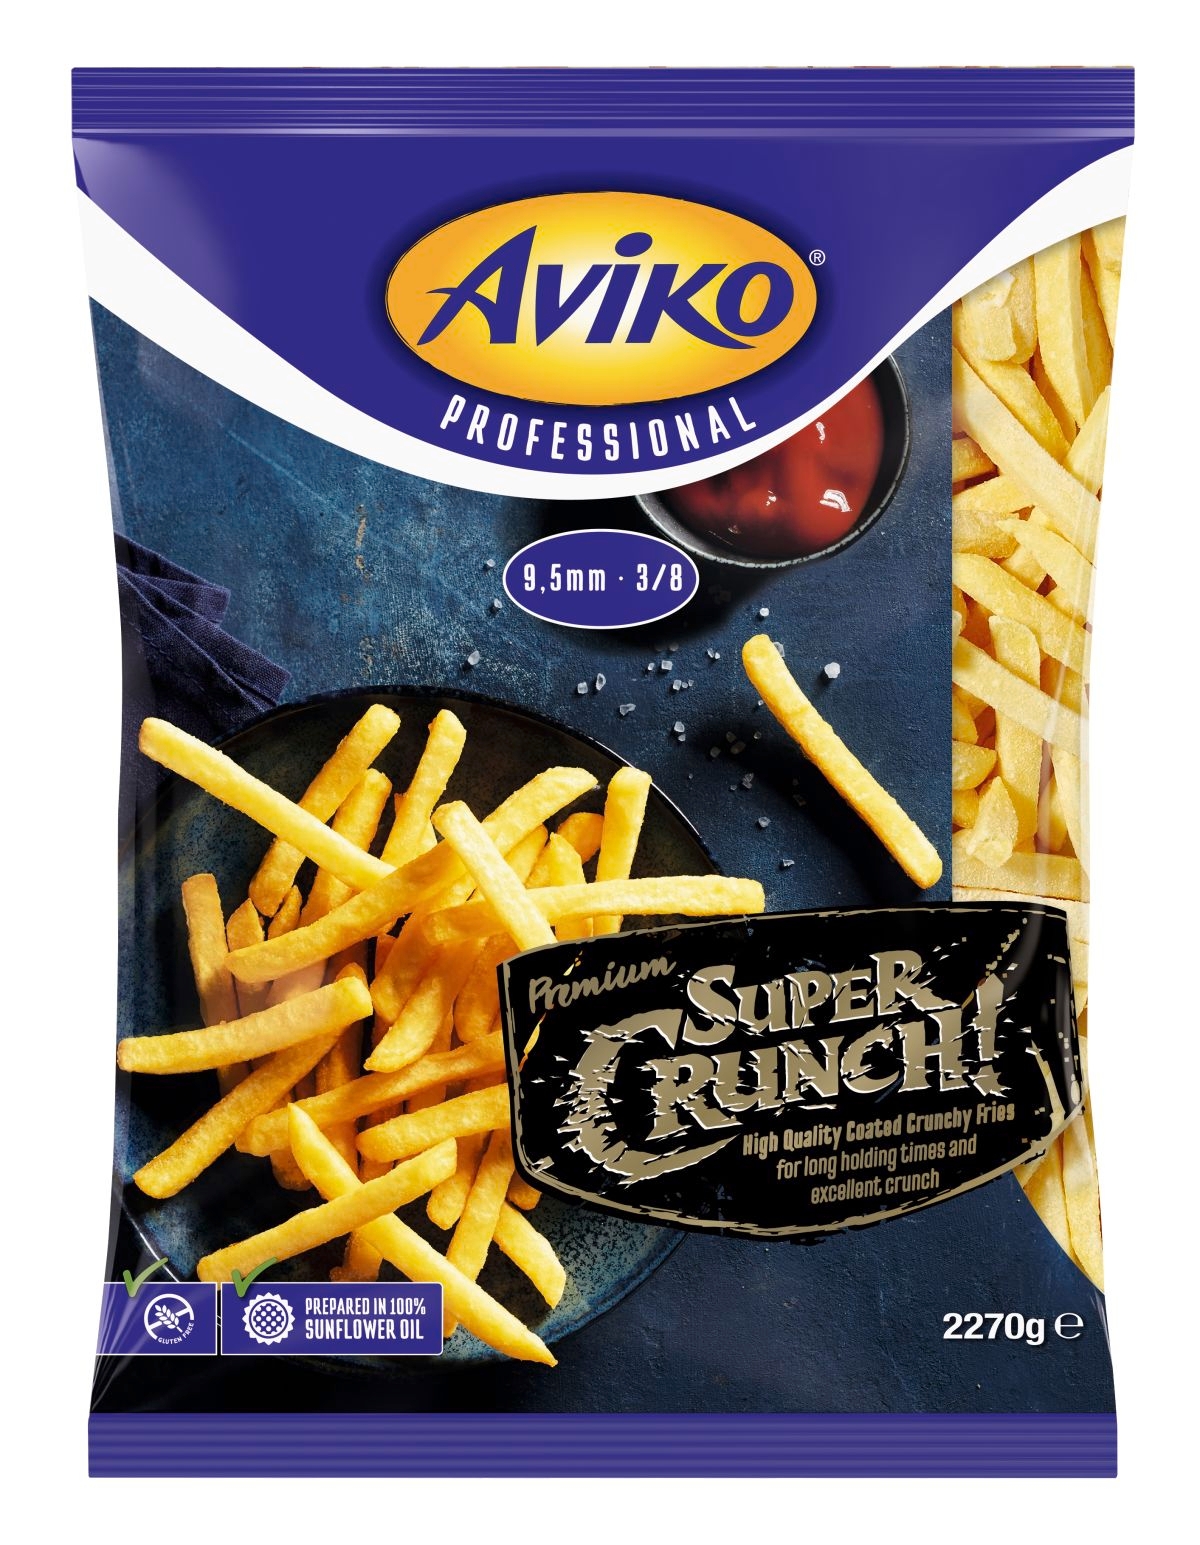 Aviko-supercrunch-Fries-chips-9-5mm-2270g-1.jpg